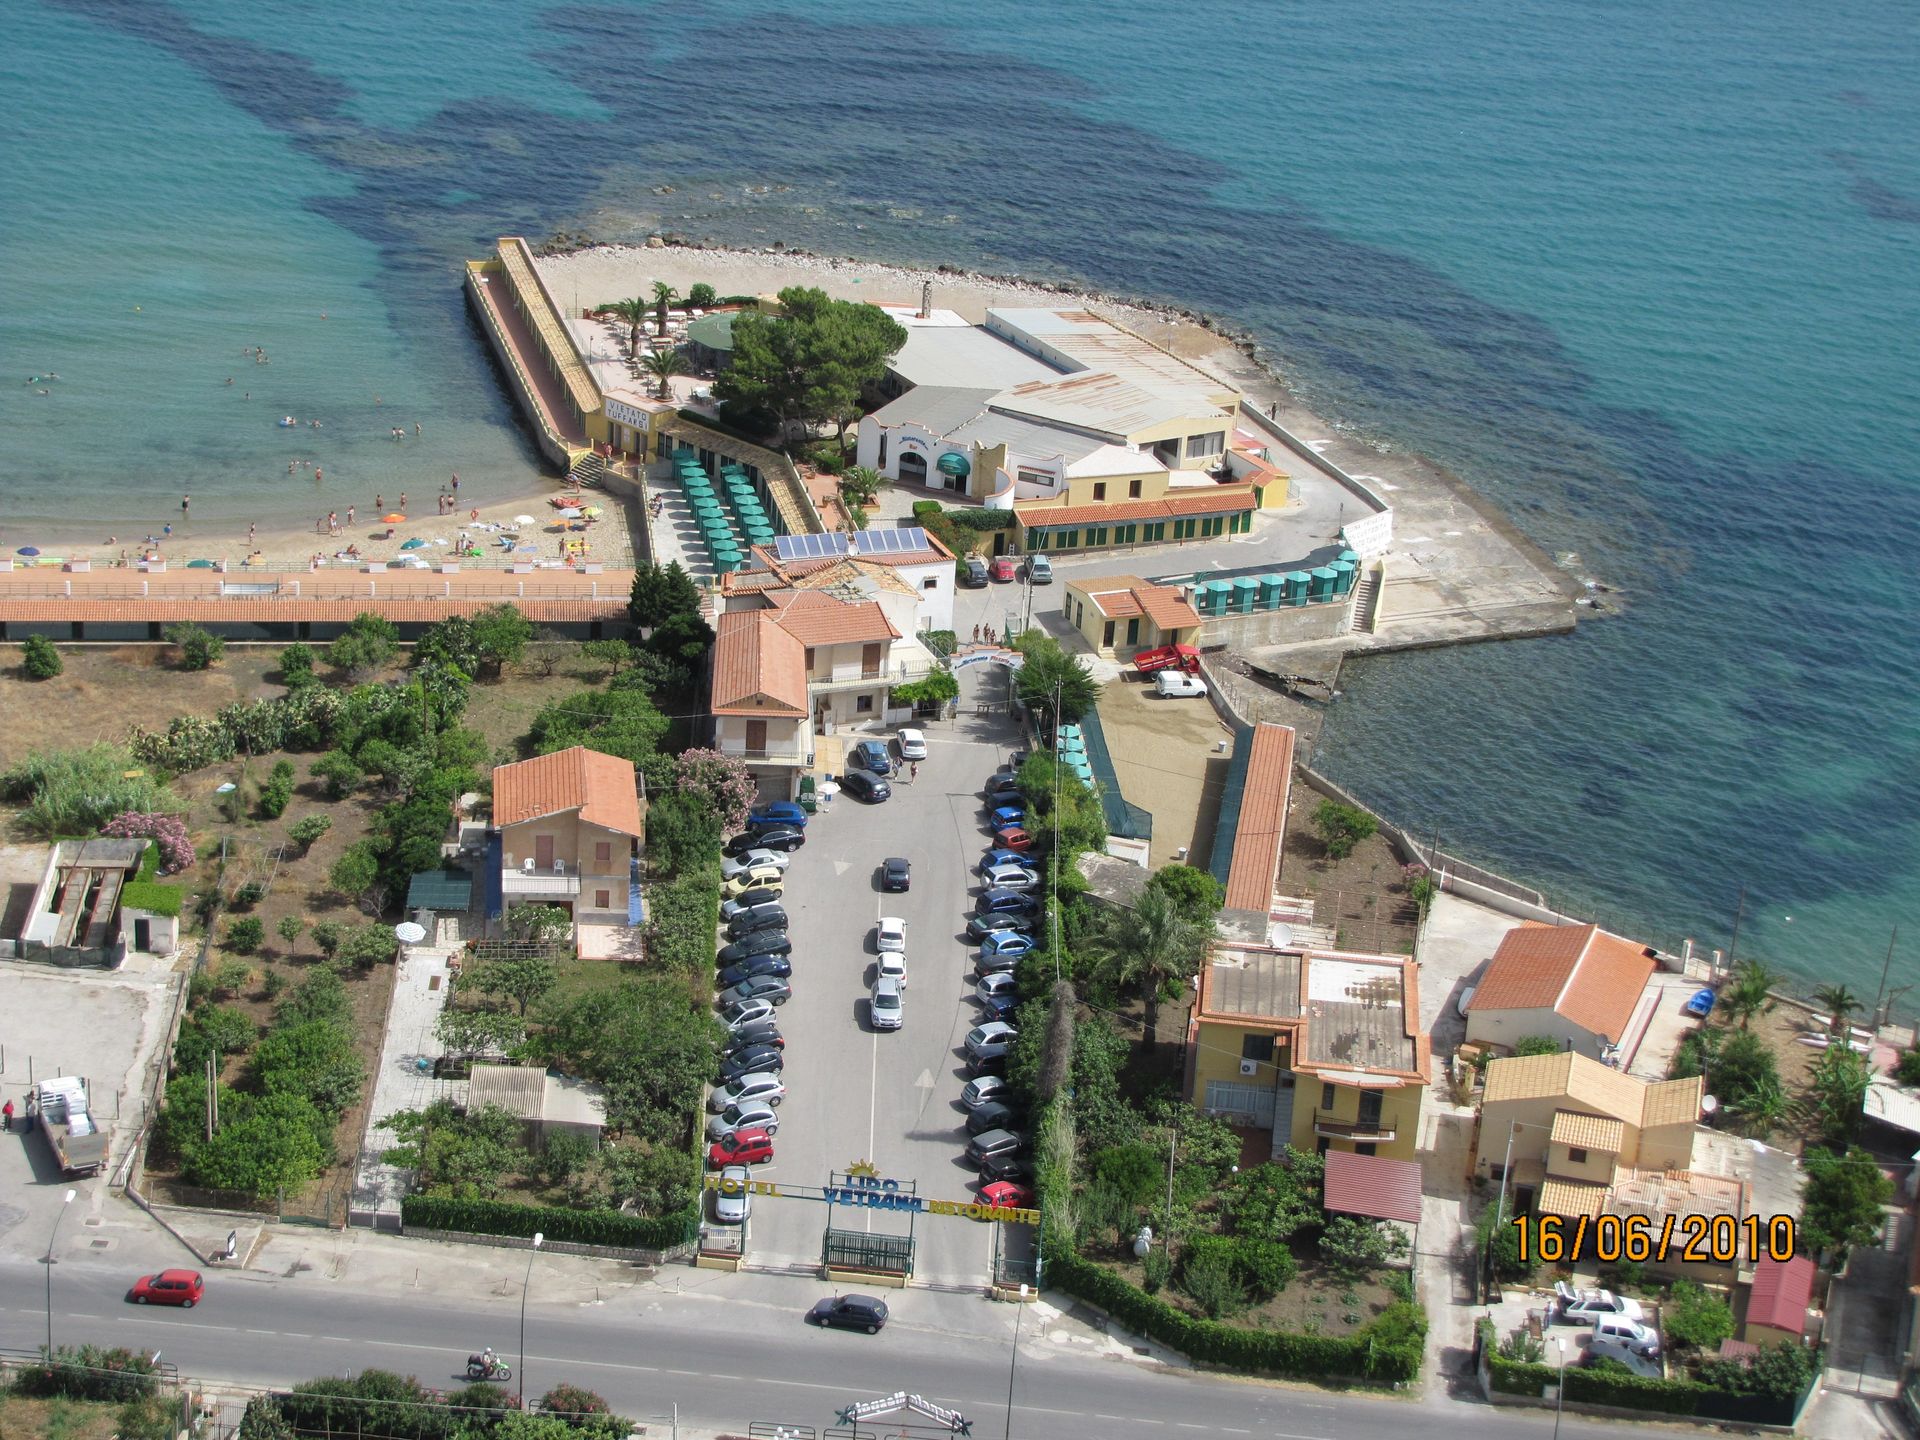 L’Hotel Lido Vetrana, situato sullo splendido litorale della città di Trabia